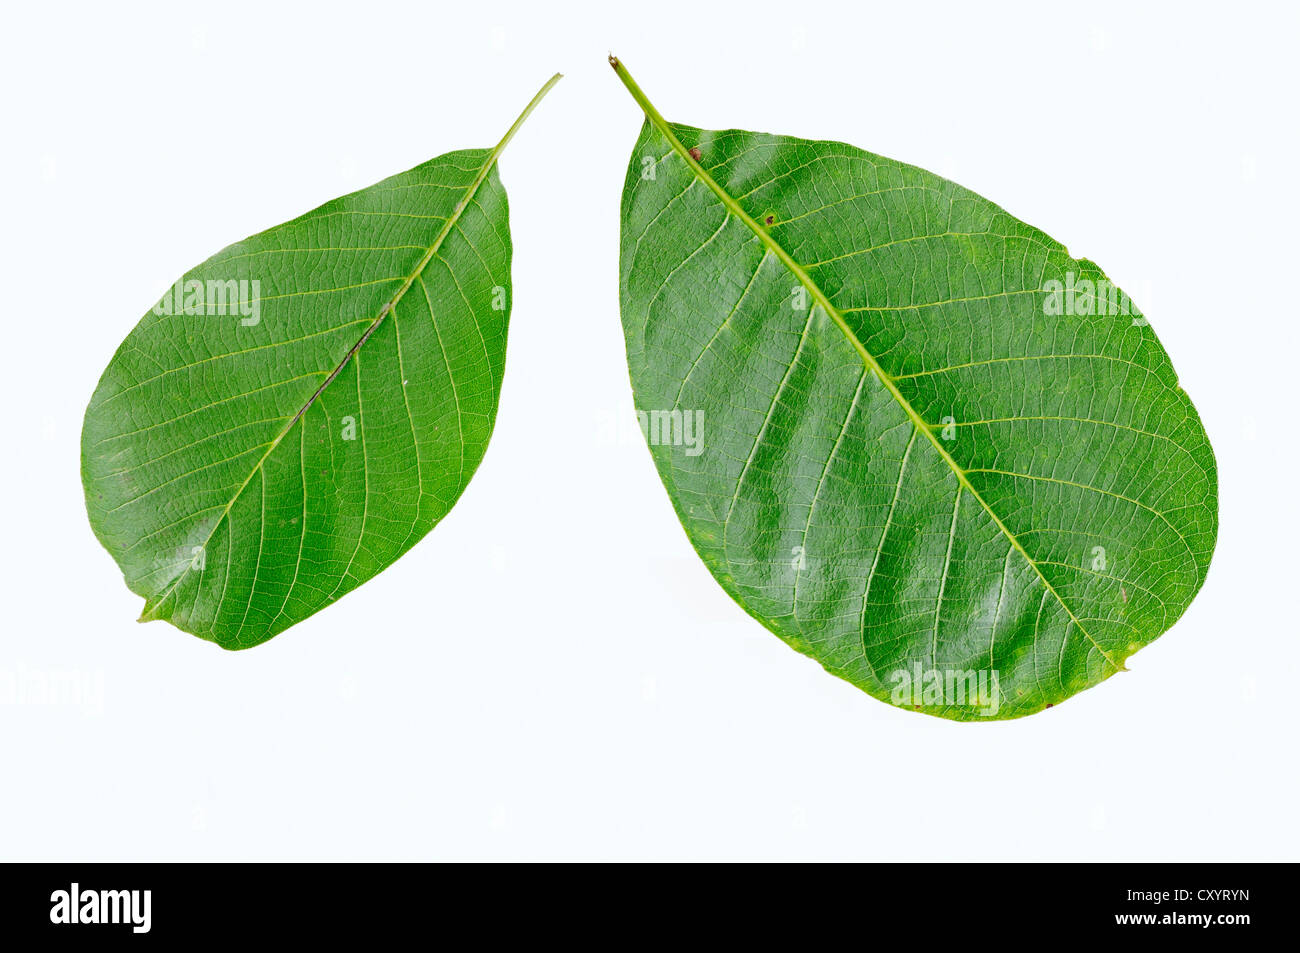 Persian walnut, English walnut (Juglans regia), leaves Stock Photo